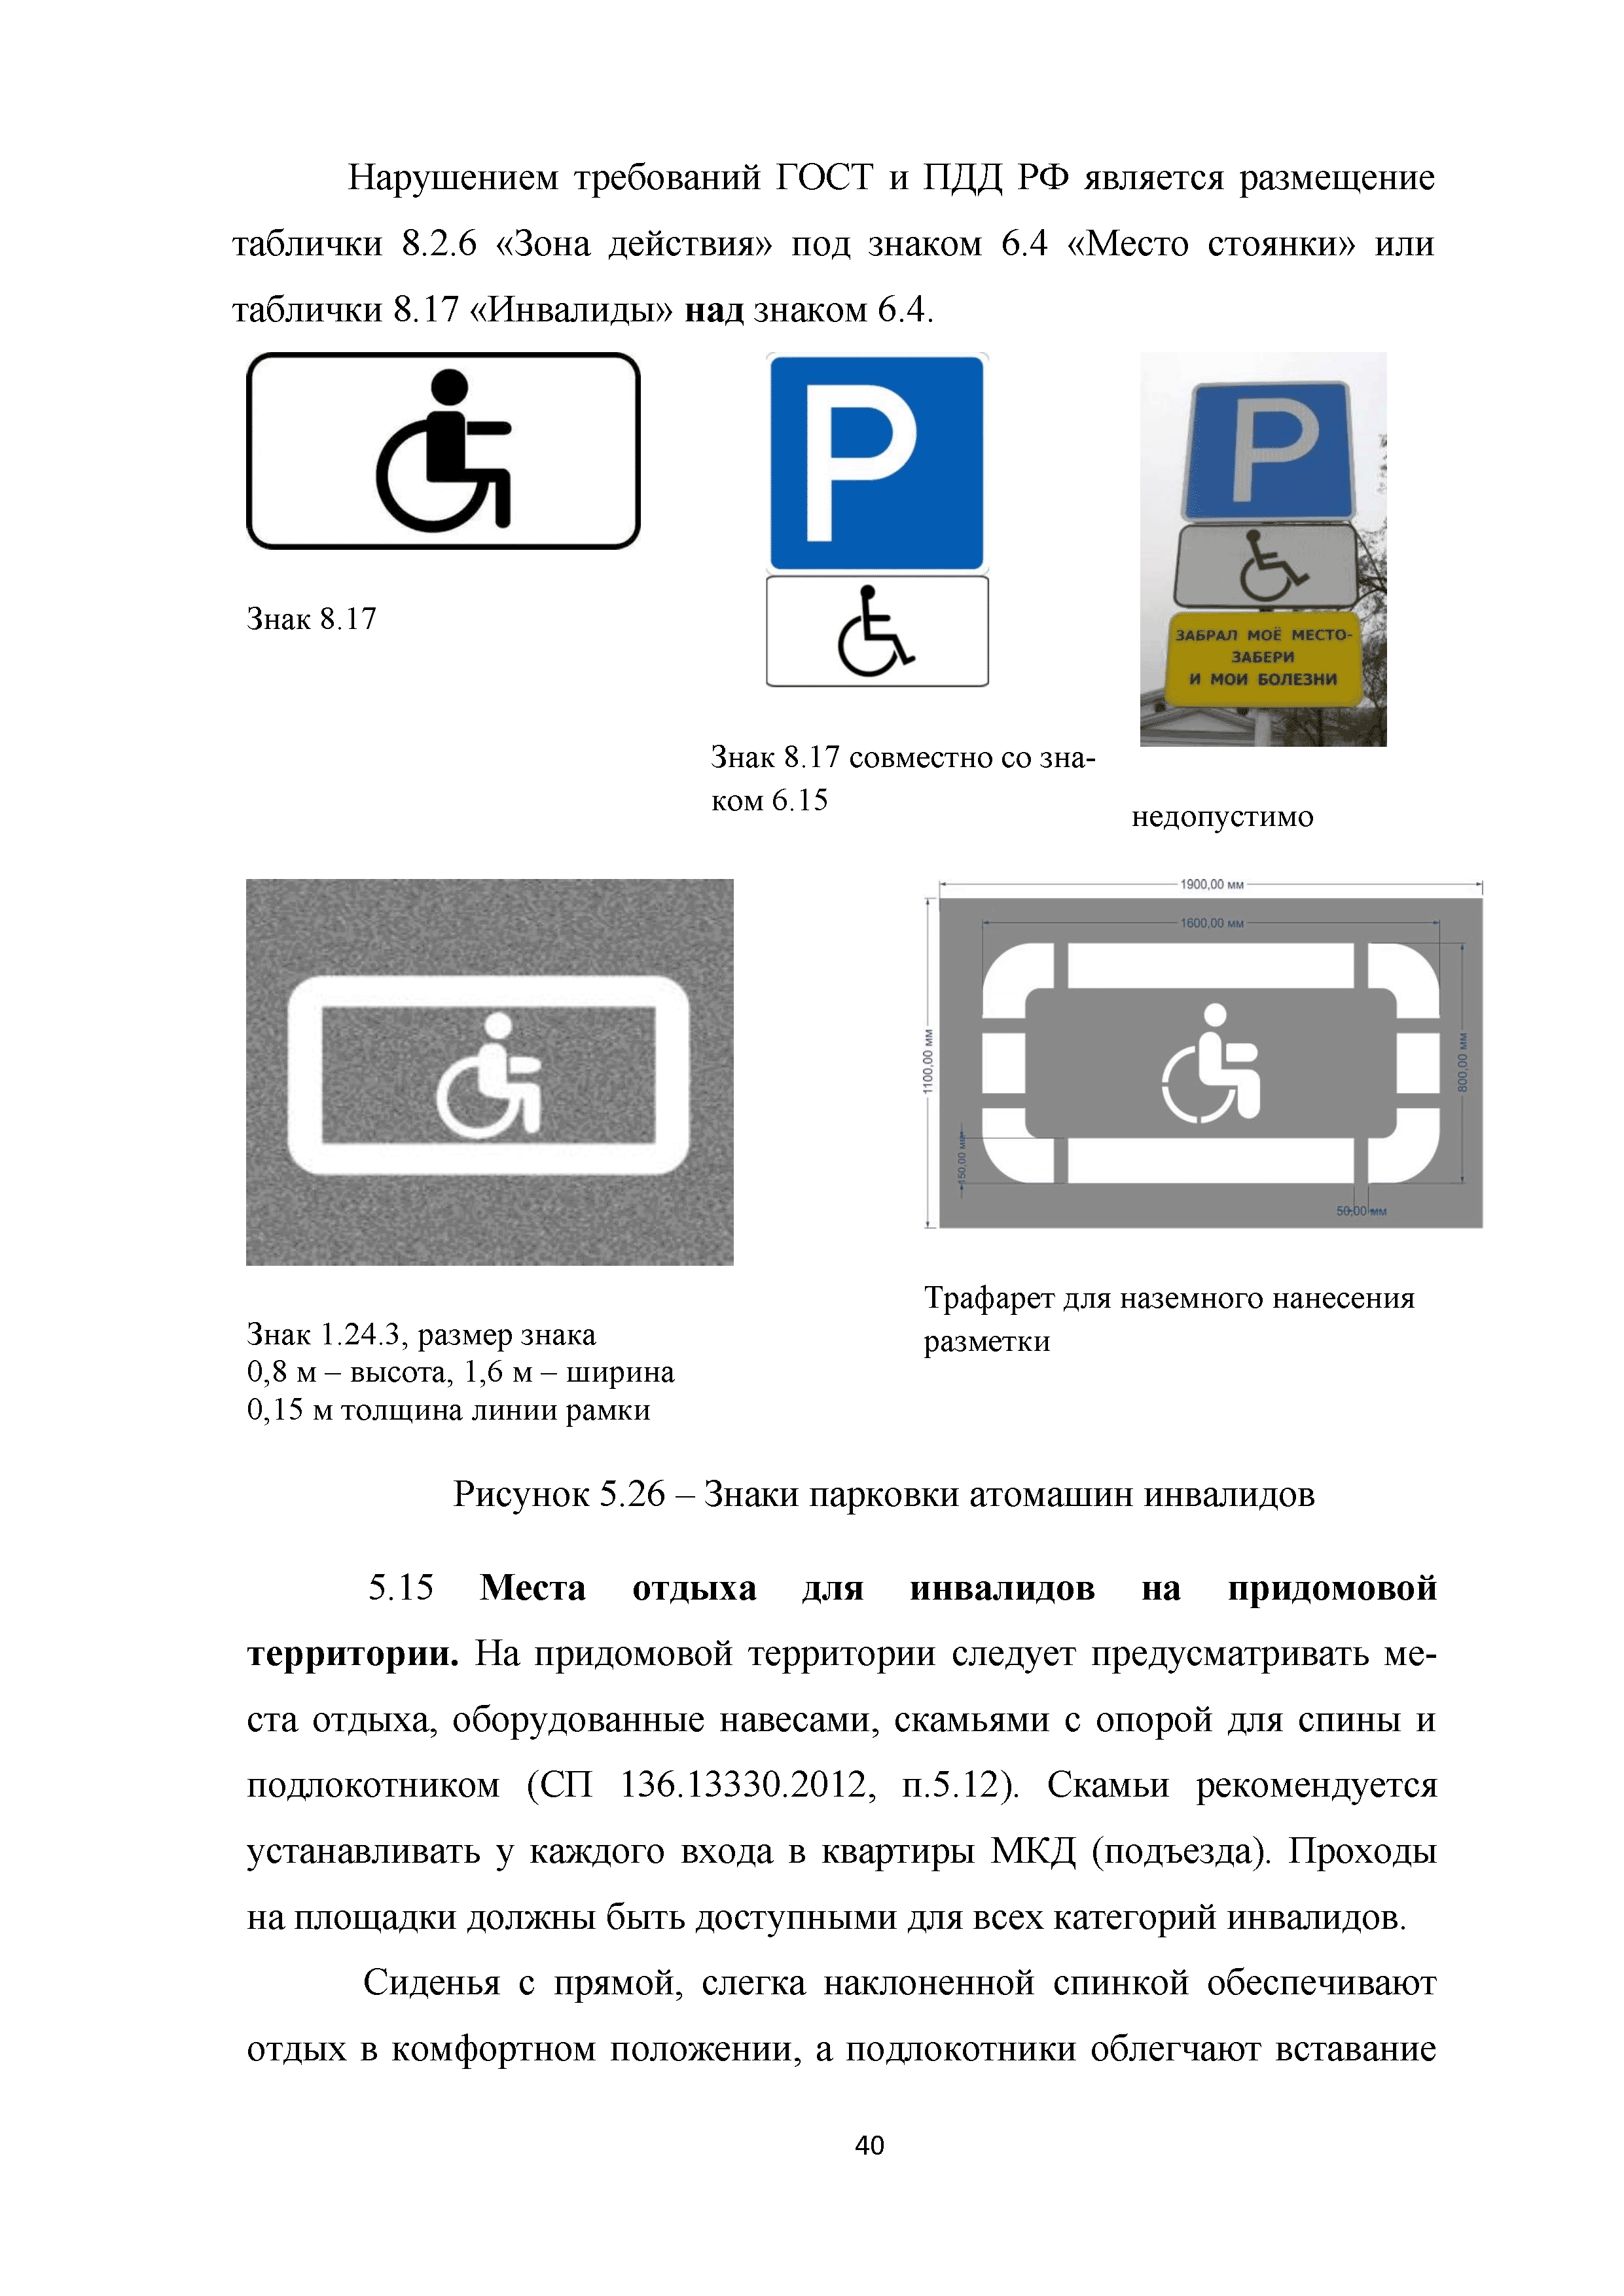 Что означает знак парковка с инвалидным креслом